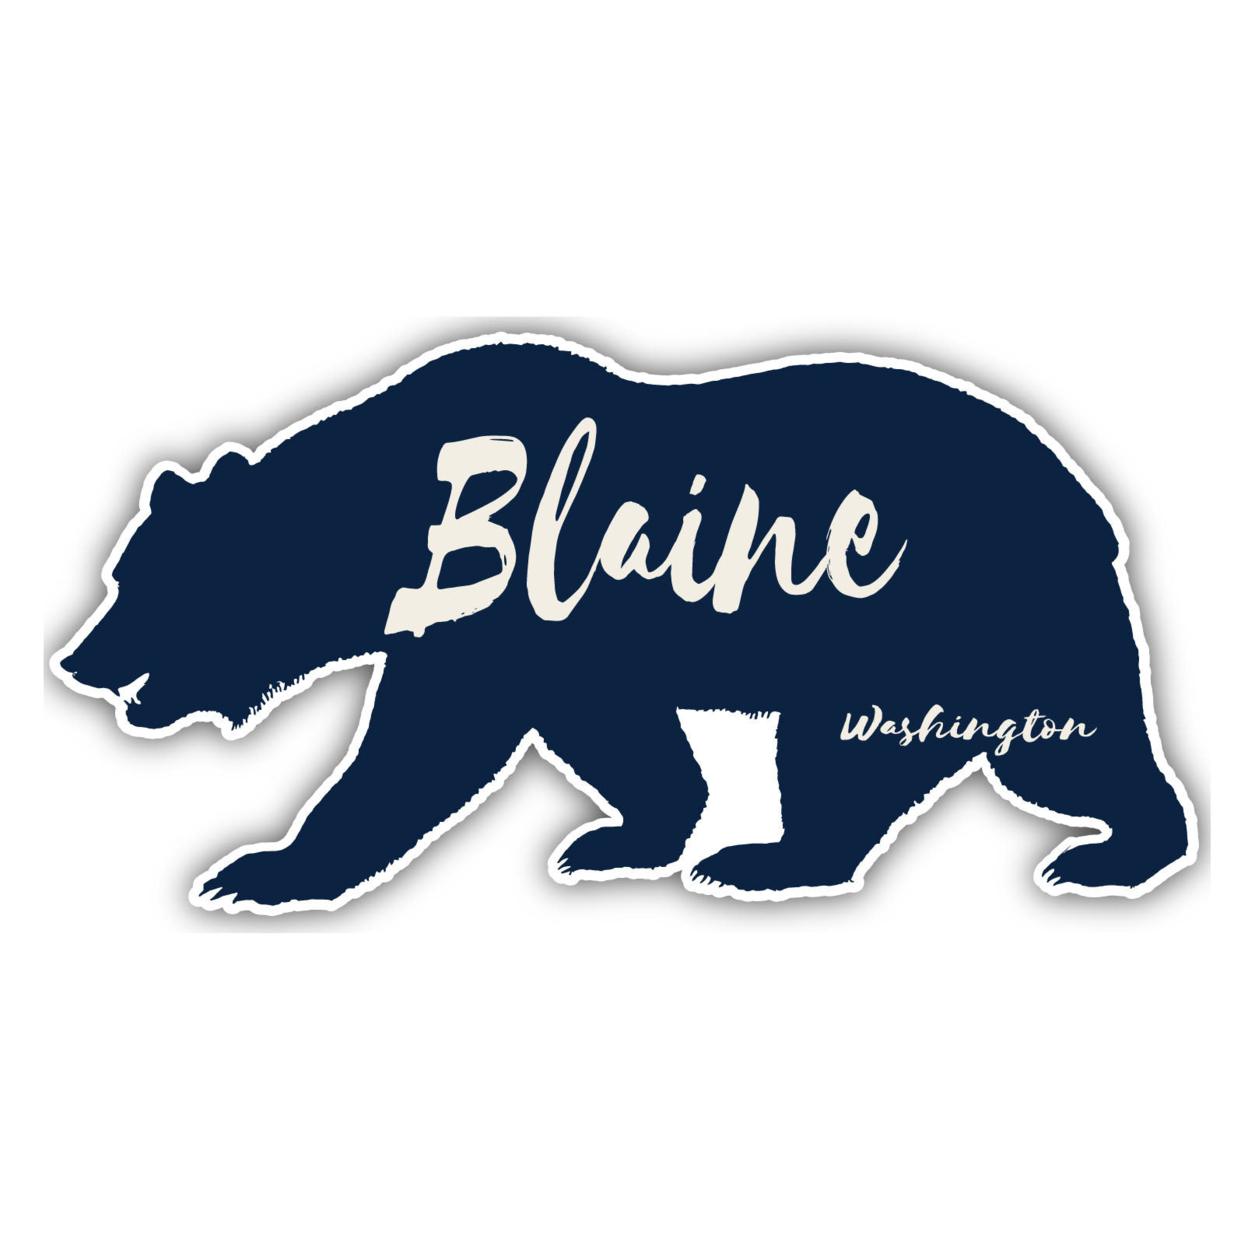 Blaine Washington Souvenir Decorative Stickers (Choose Theme And Size) - Single Unit, 8-Inch, Tent